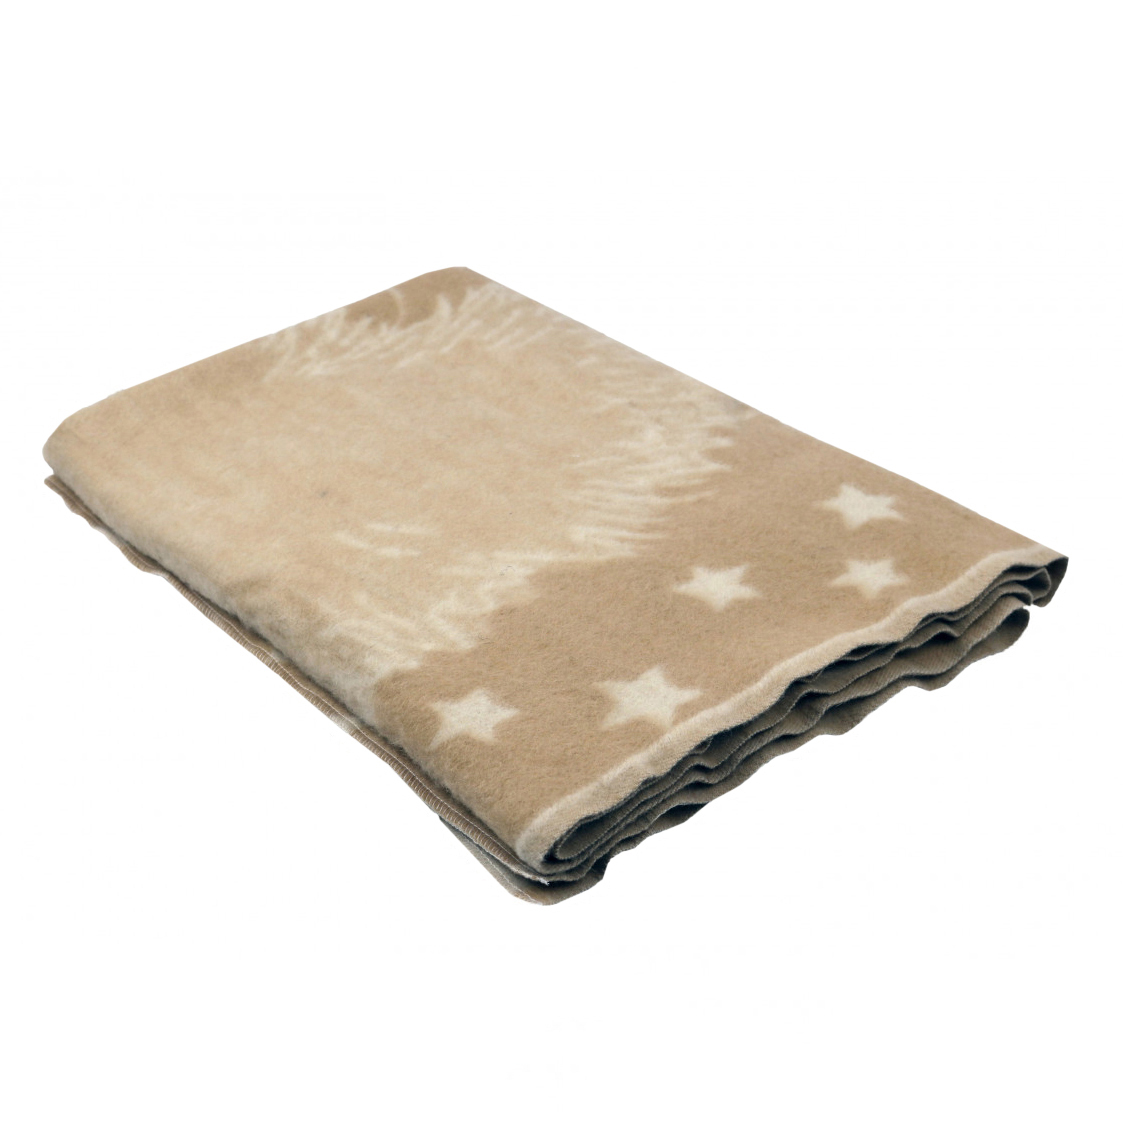 Детское одеяло Ежик цвет: бежевый Теплое (100х140 см), размер 100х140 см